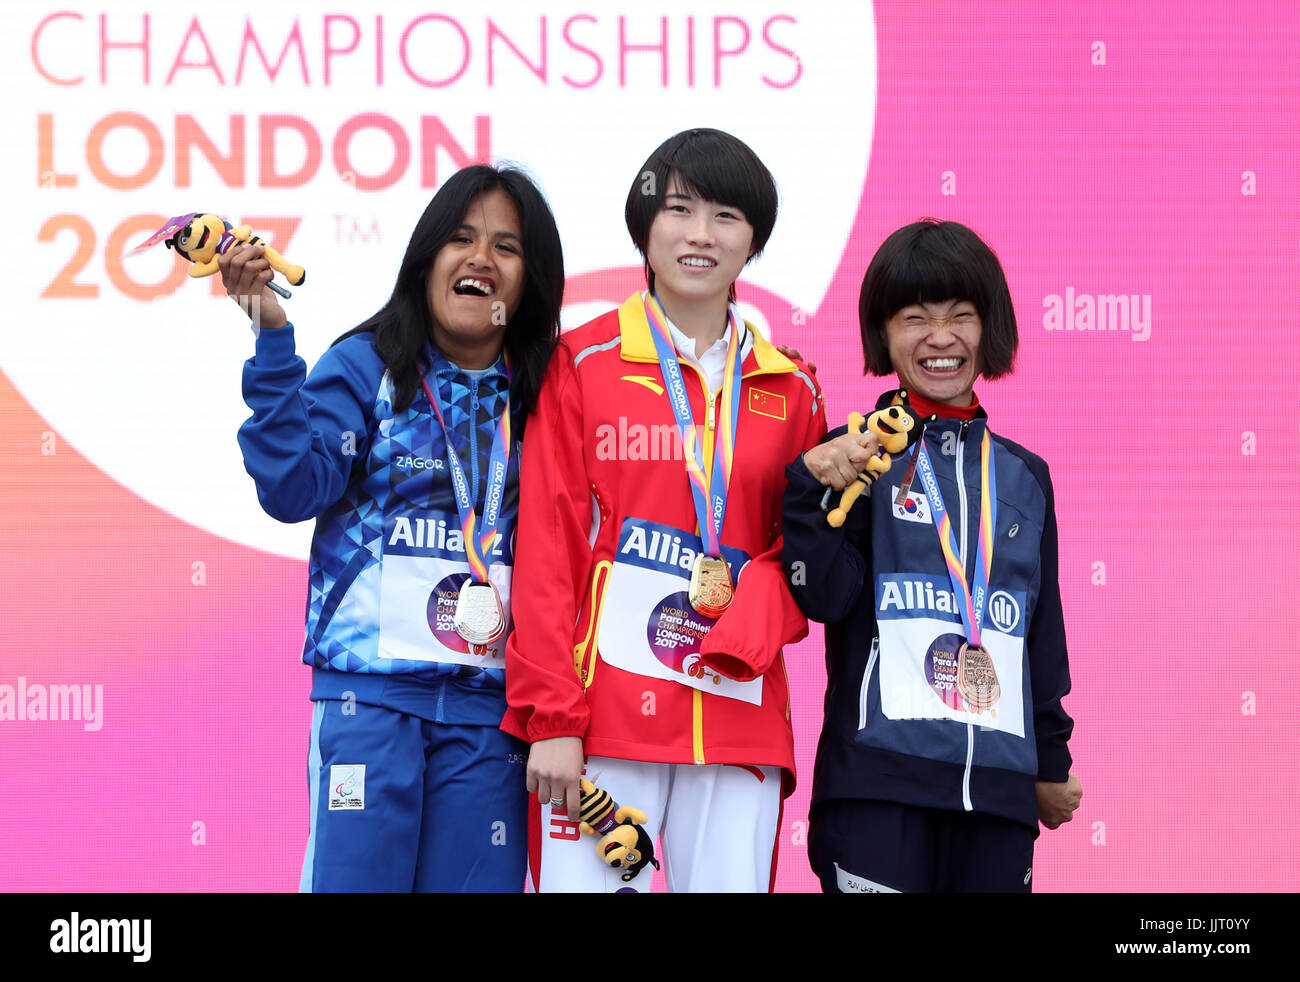 Chinas Yiting Shi (Mitte), Argentiniens Yanina Andrea Martinez (links) und Südkoreas Min Jae Jeon mit ihren Medaillen nach der Frauen 200m T36 endgültig nach der Frauen 200m T36 tagsüber fünf der 2017 Para Leichtathletik-Weltmeisterschaften in London Stadion Stockfoto